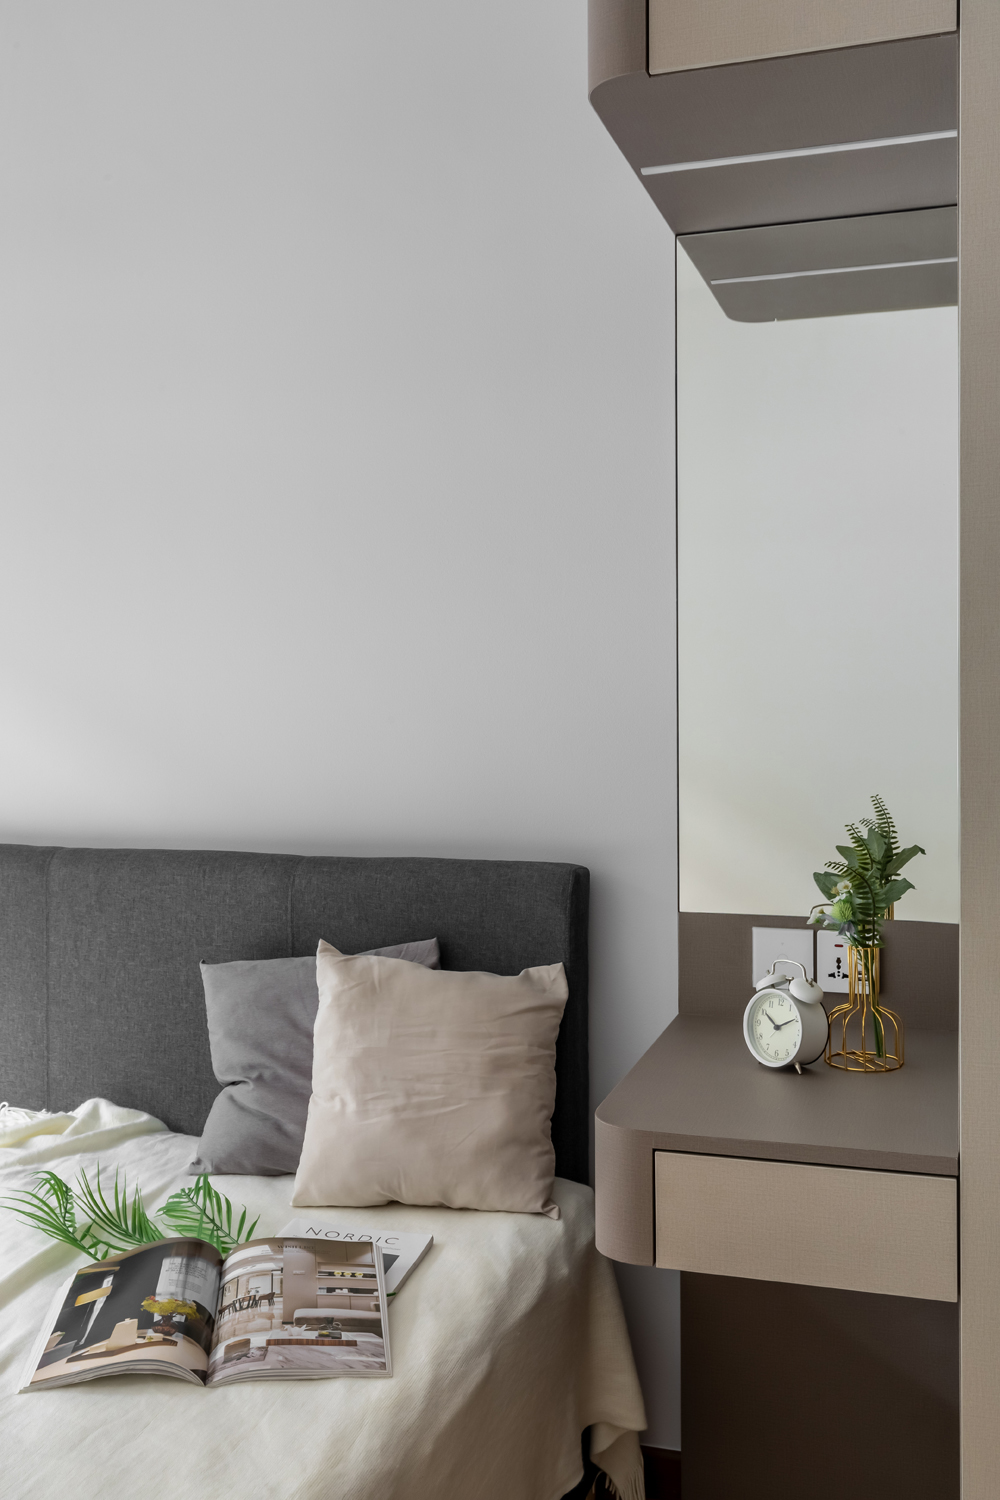 Modern Design - Bedroom - HDB 4 Room - Design by U-Home Interior Design Pte Ltd